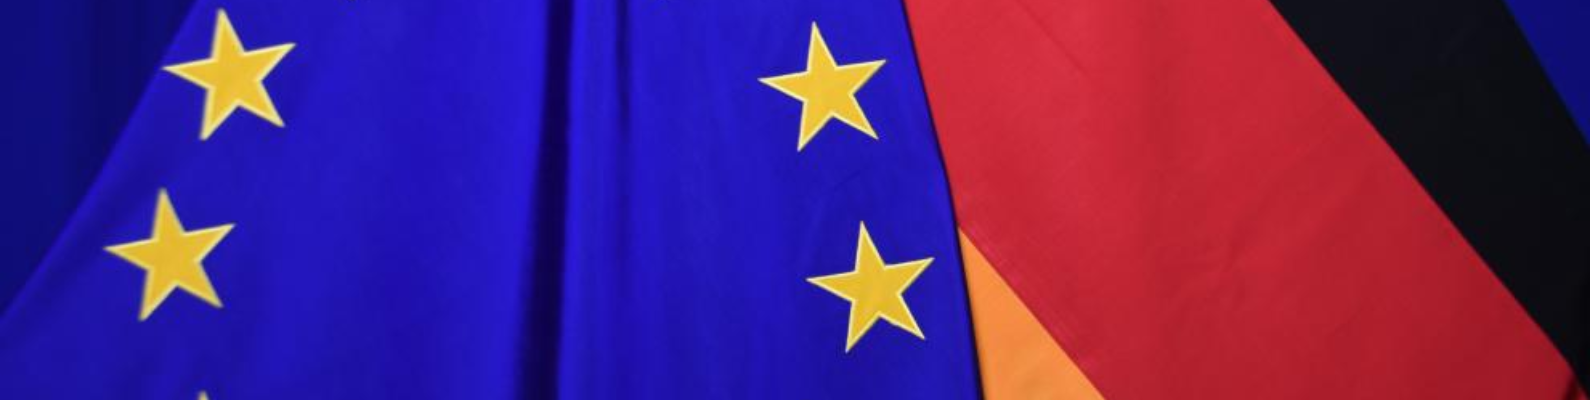 EU-Flagge und Deutschland-Flagge nebeneinander